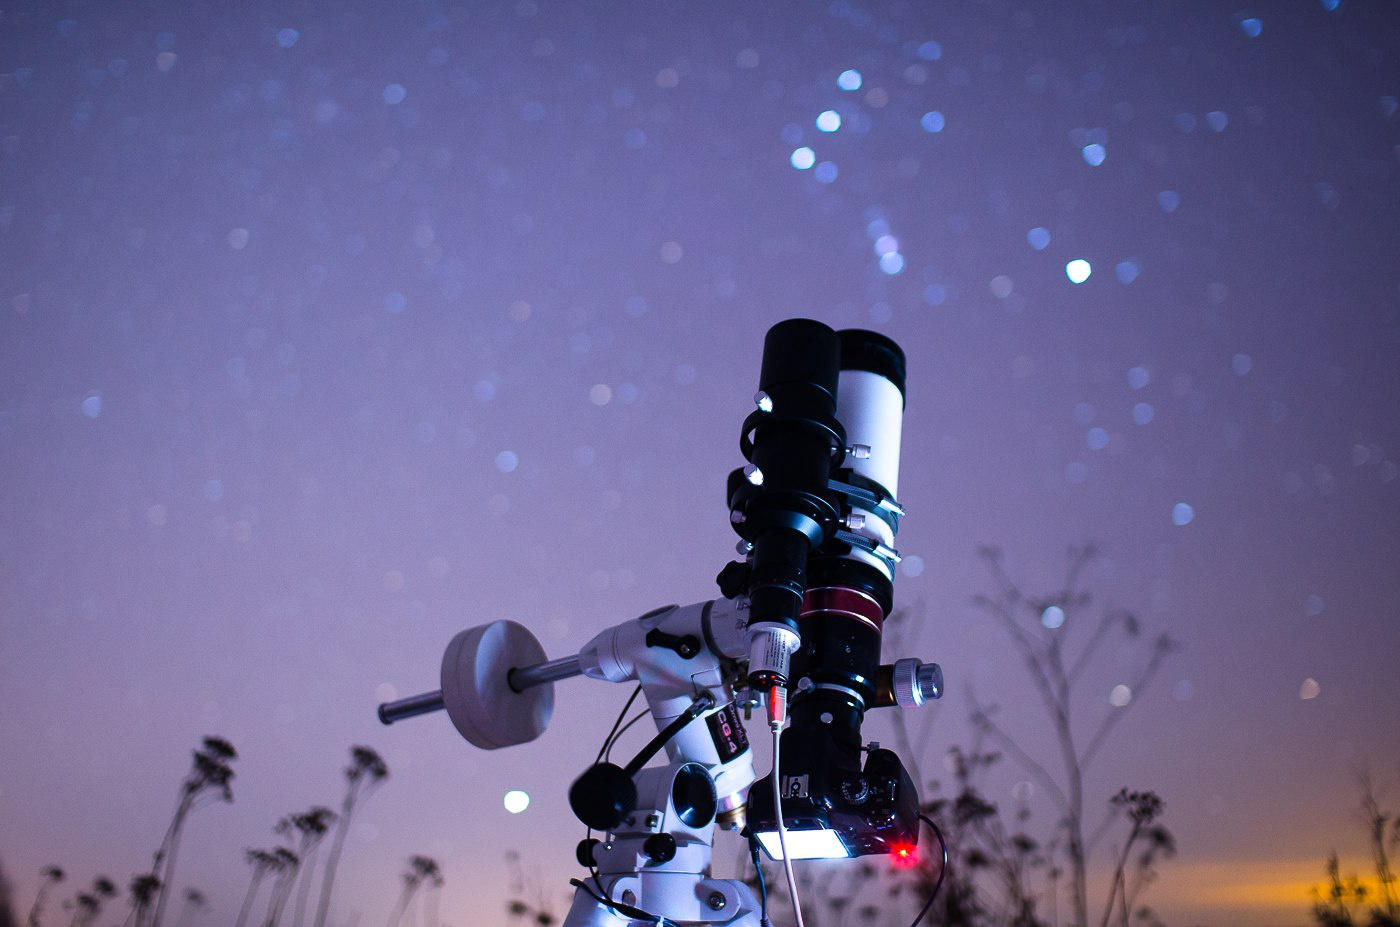 Вот так выглядит конструкция из телескопа и фотоаппарата, которую использует Евгений